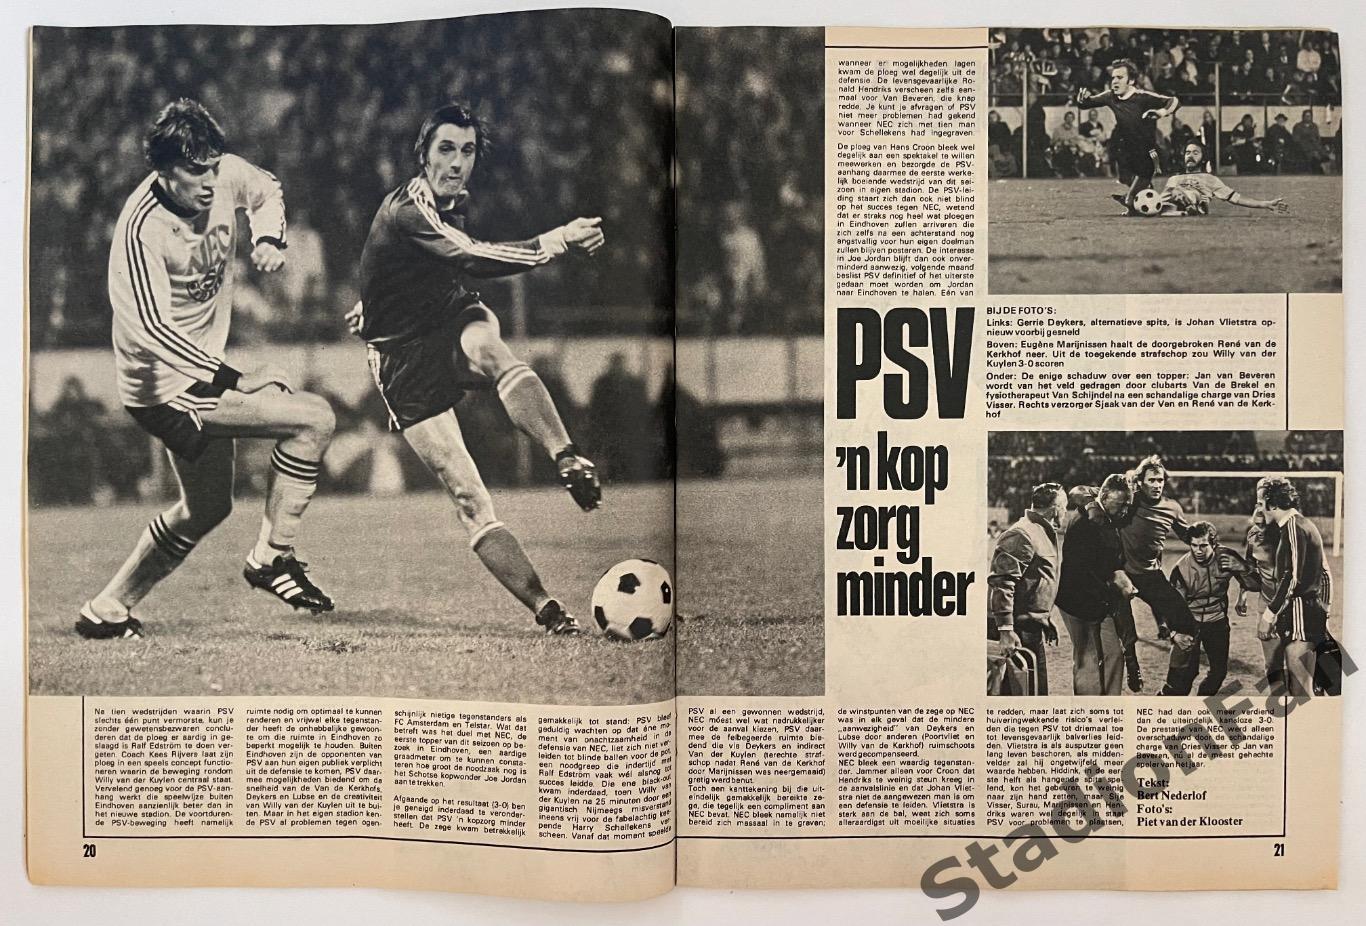 Журнал Voetbal nr.40 - 1977 год. 6